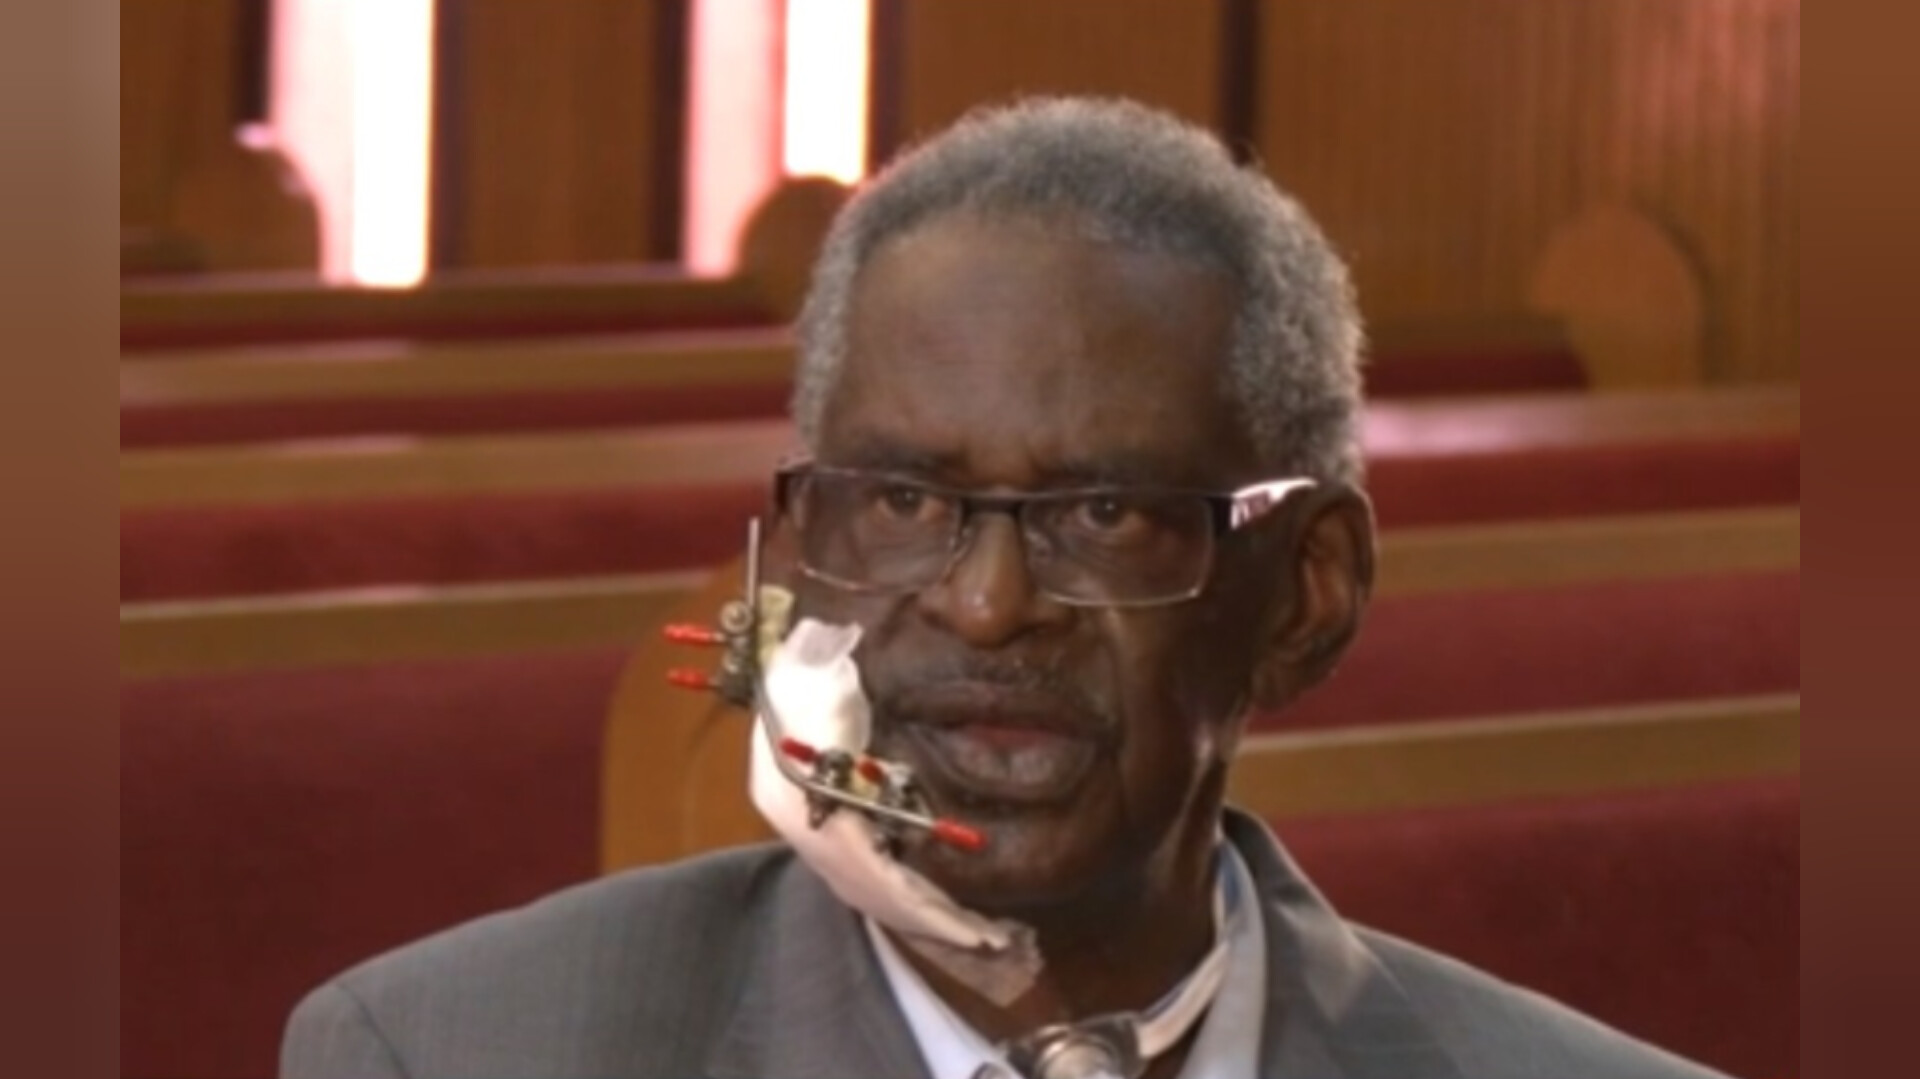 Pastor baleado na boca em assalto fala pela primeira vez: “Mantive minha fé”